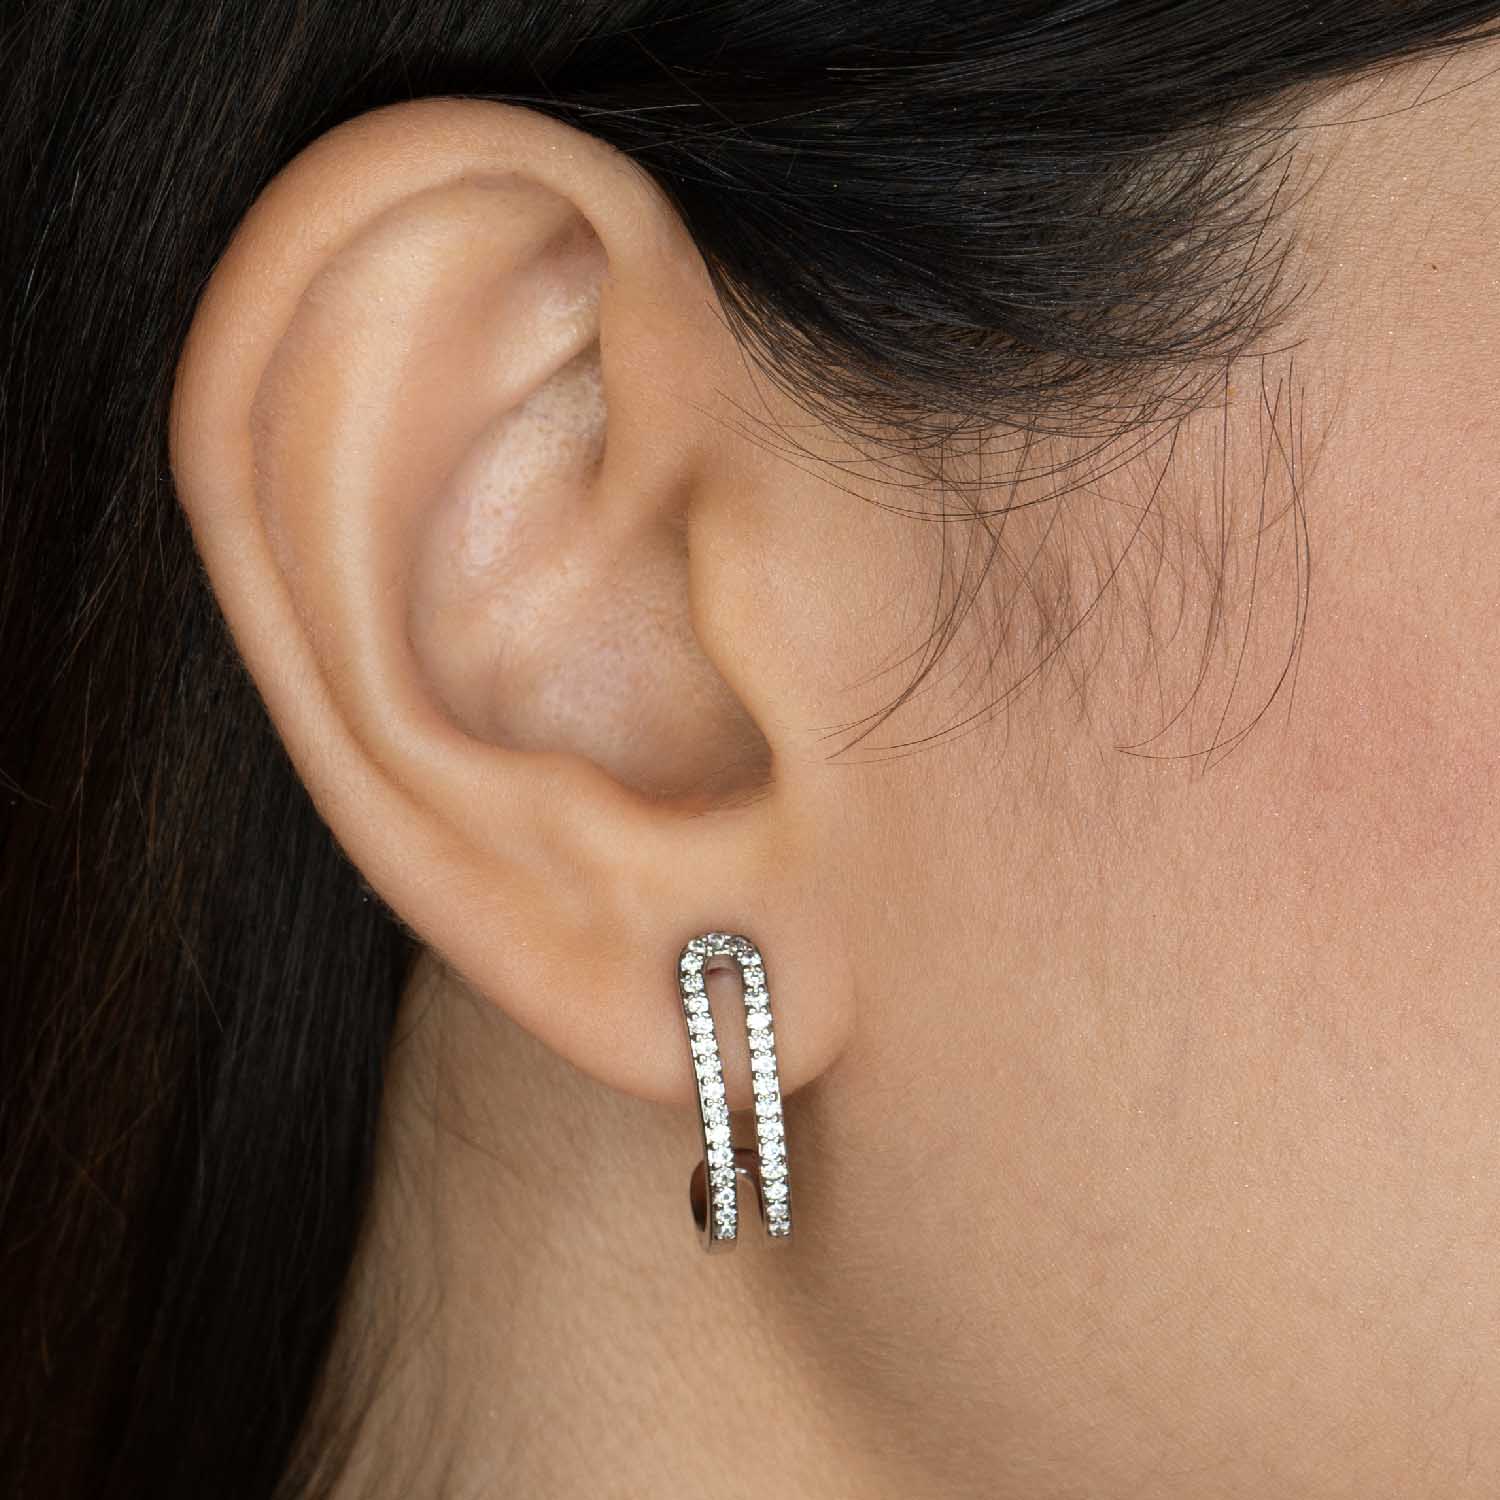 W Premium Jewellery Earrings 4 in 1 Pearl Silver